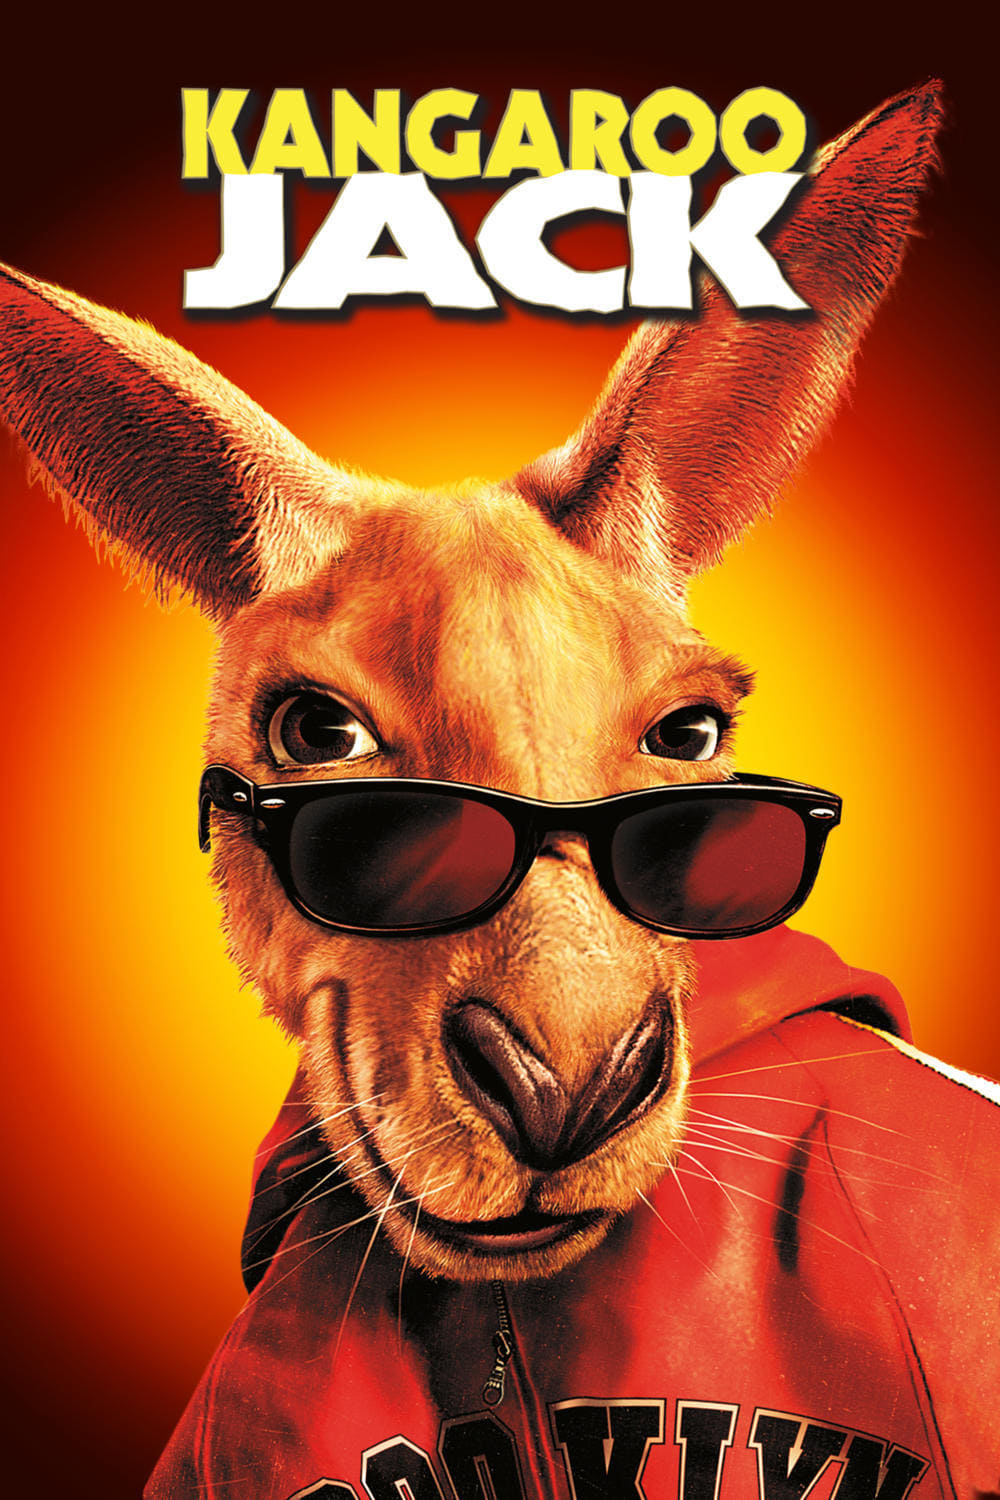 Kangaroo Jack est-il disponible sur Netflix ou autre ?